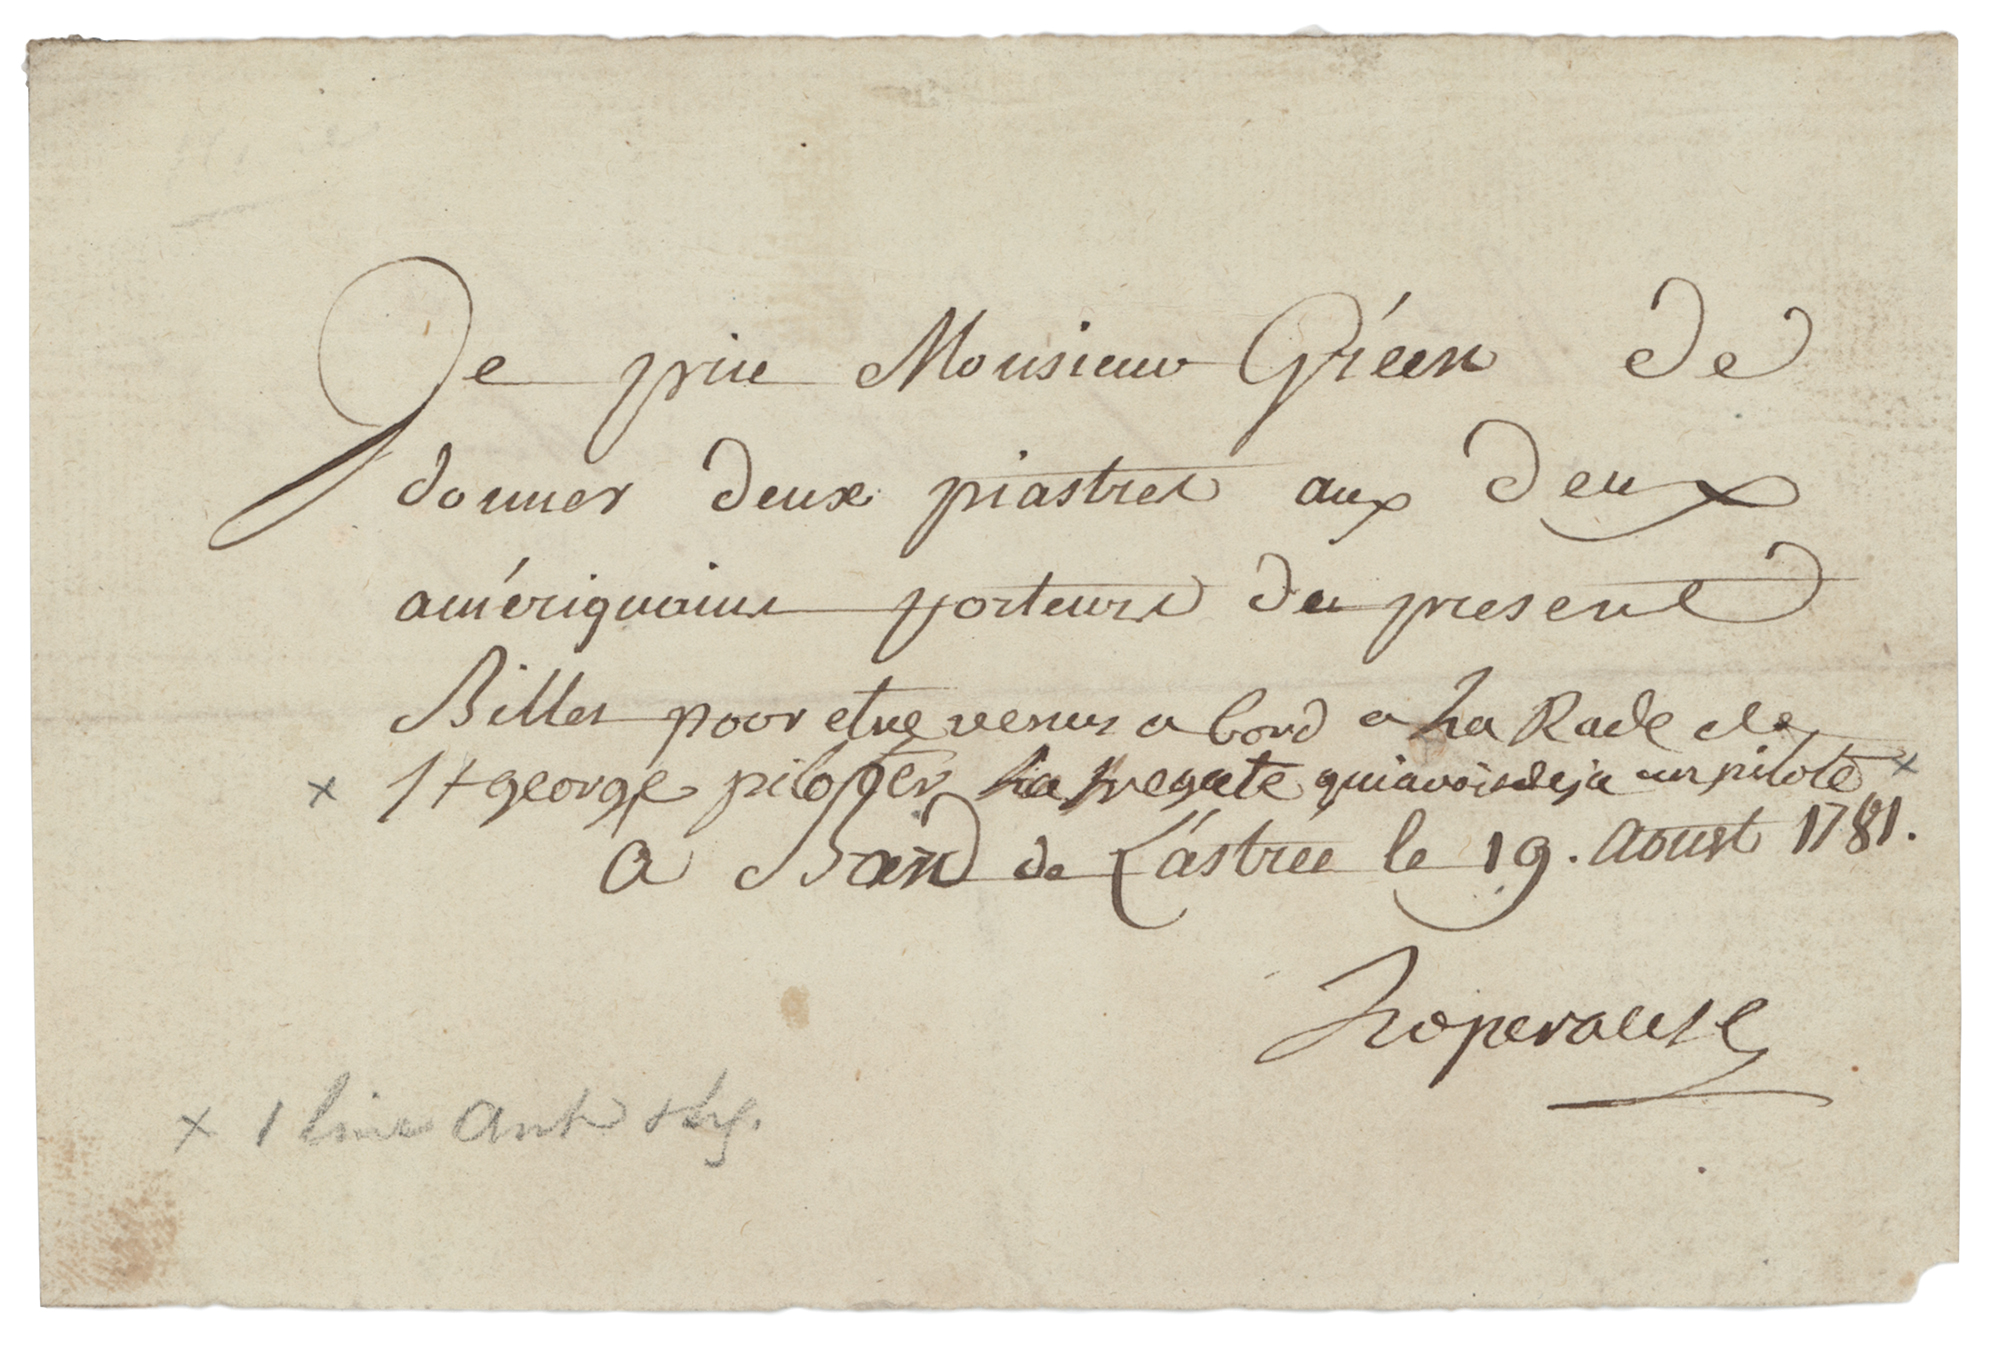 Lot #176 Jean-Francois de Galaupe, comte de Laperouse Document Signed - Image 1